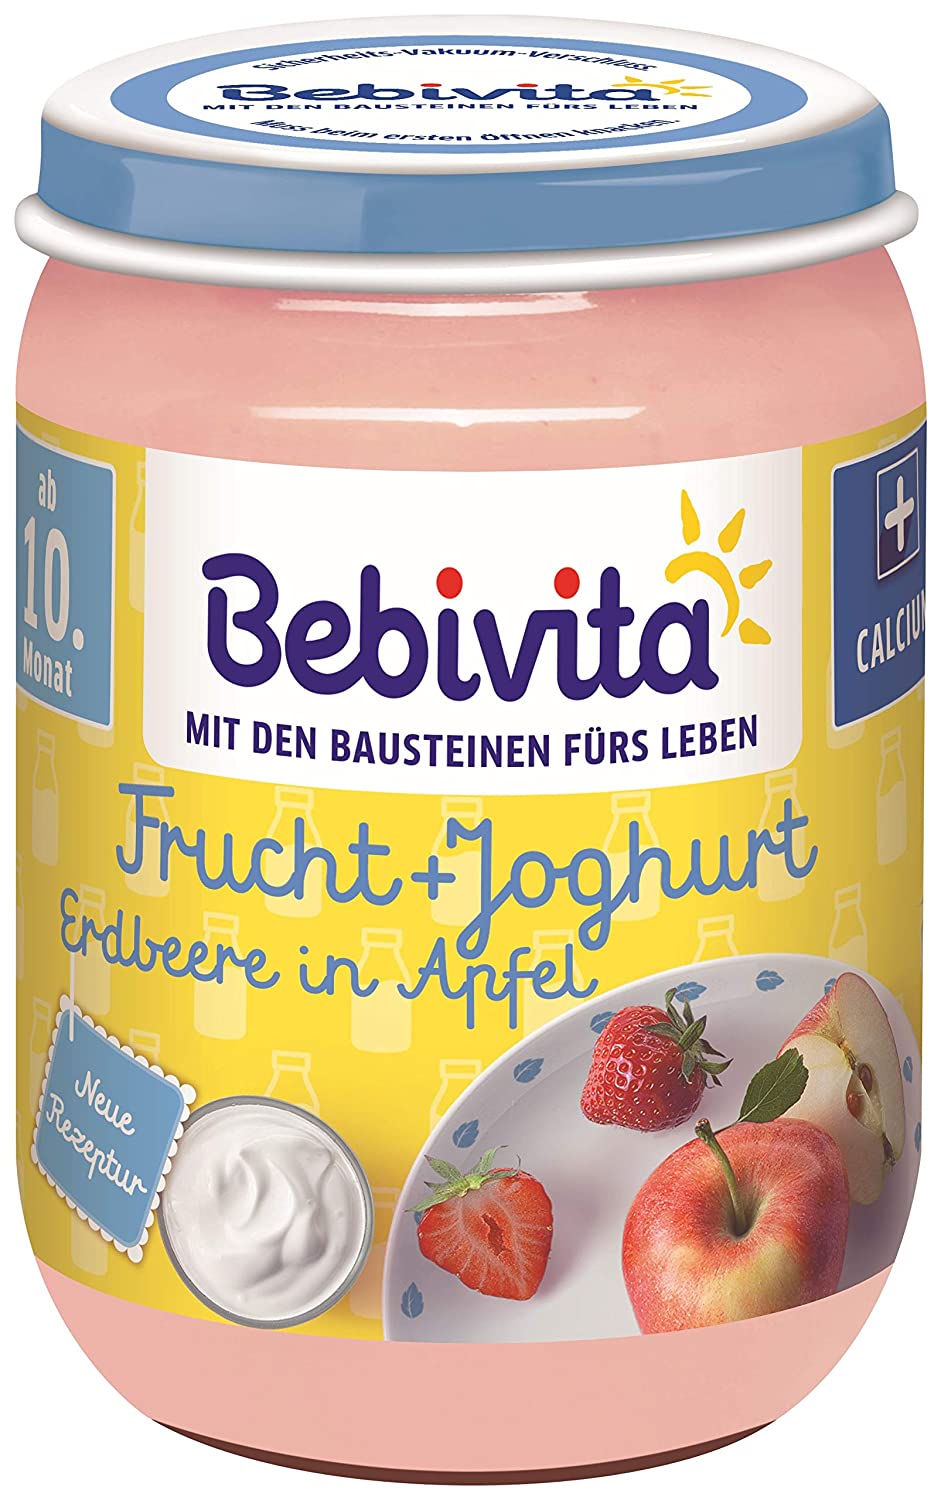 Bebivita Frucht & Joghurt Erdbeere in Apfel, 190 g